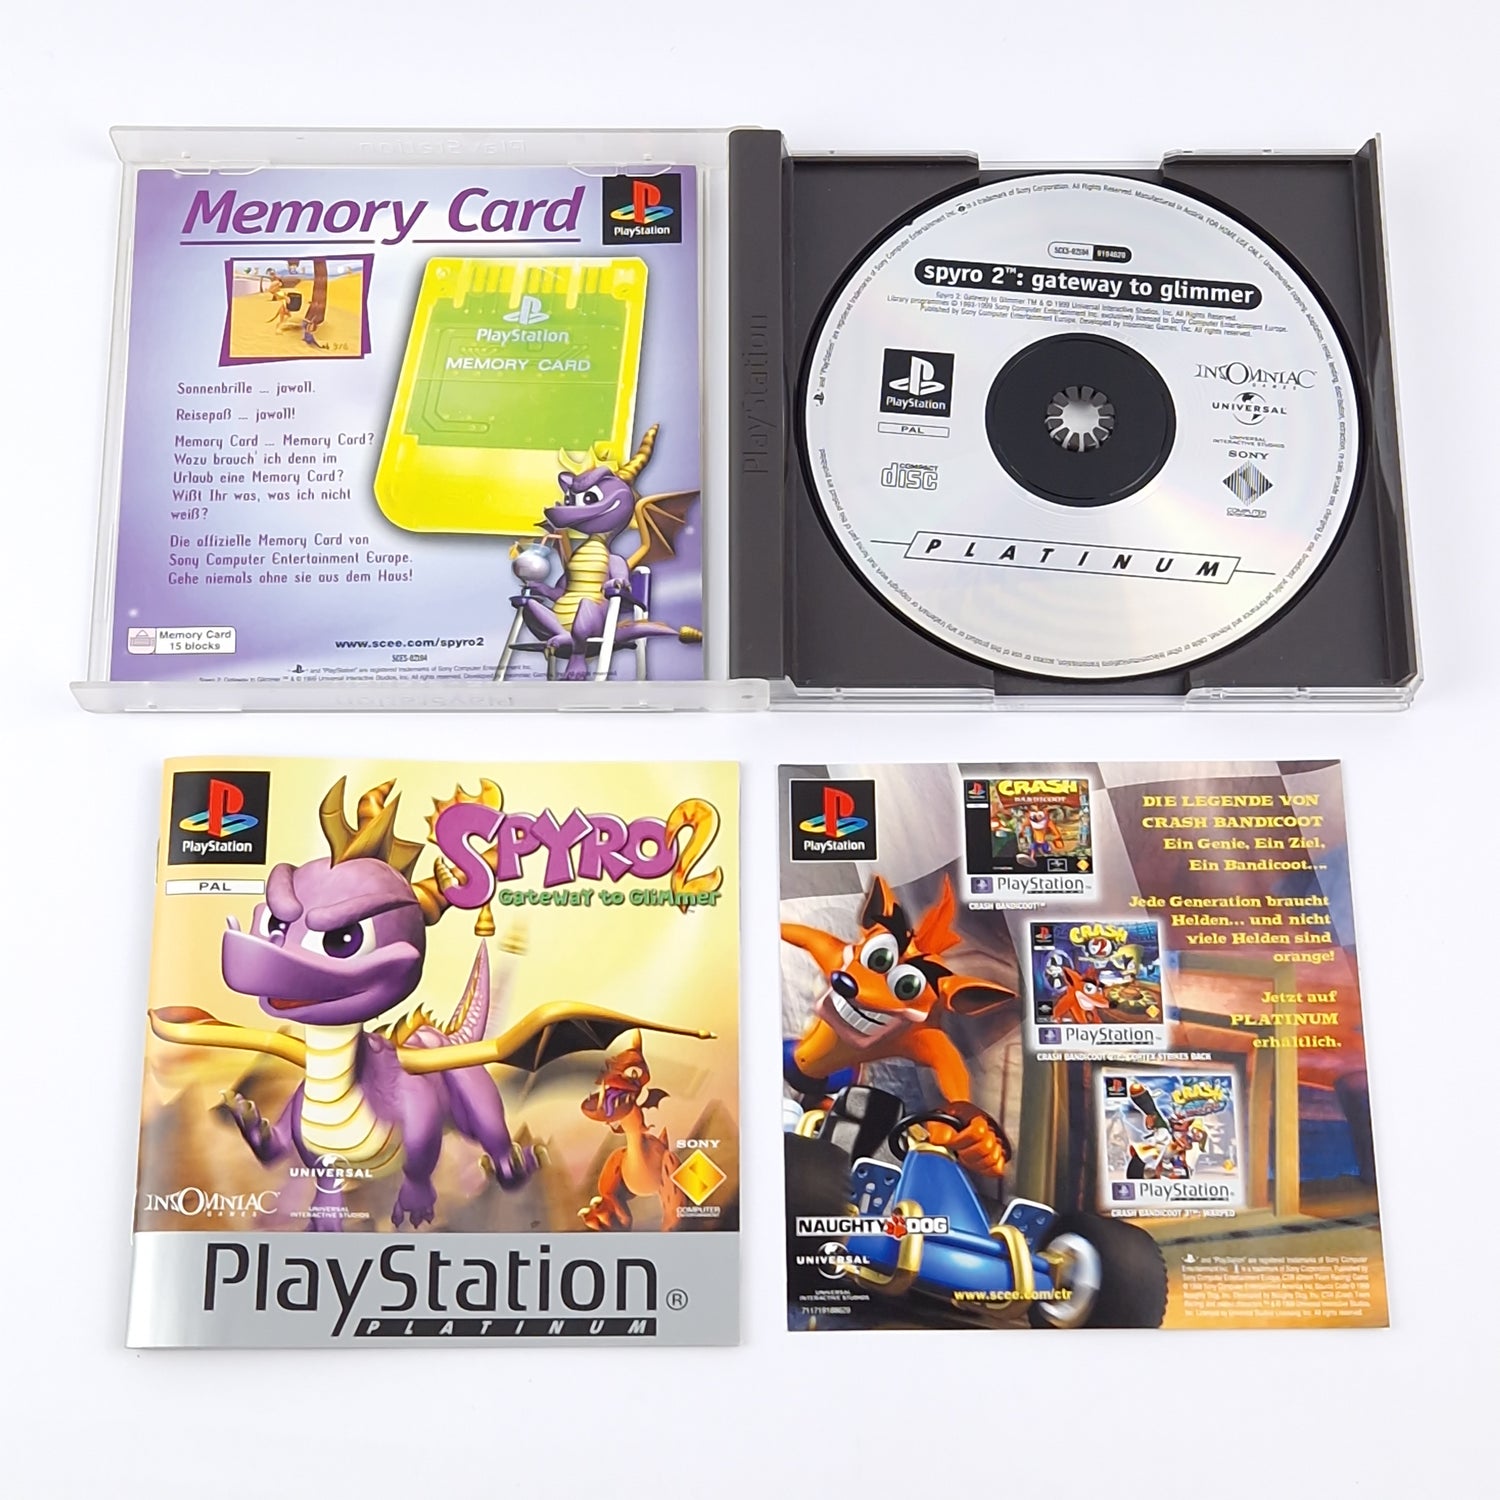 Sony Playstation 1 Spiel : Spyro 2 Gateway to Glimmer - Platinum OVP CD PS1 PSX